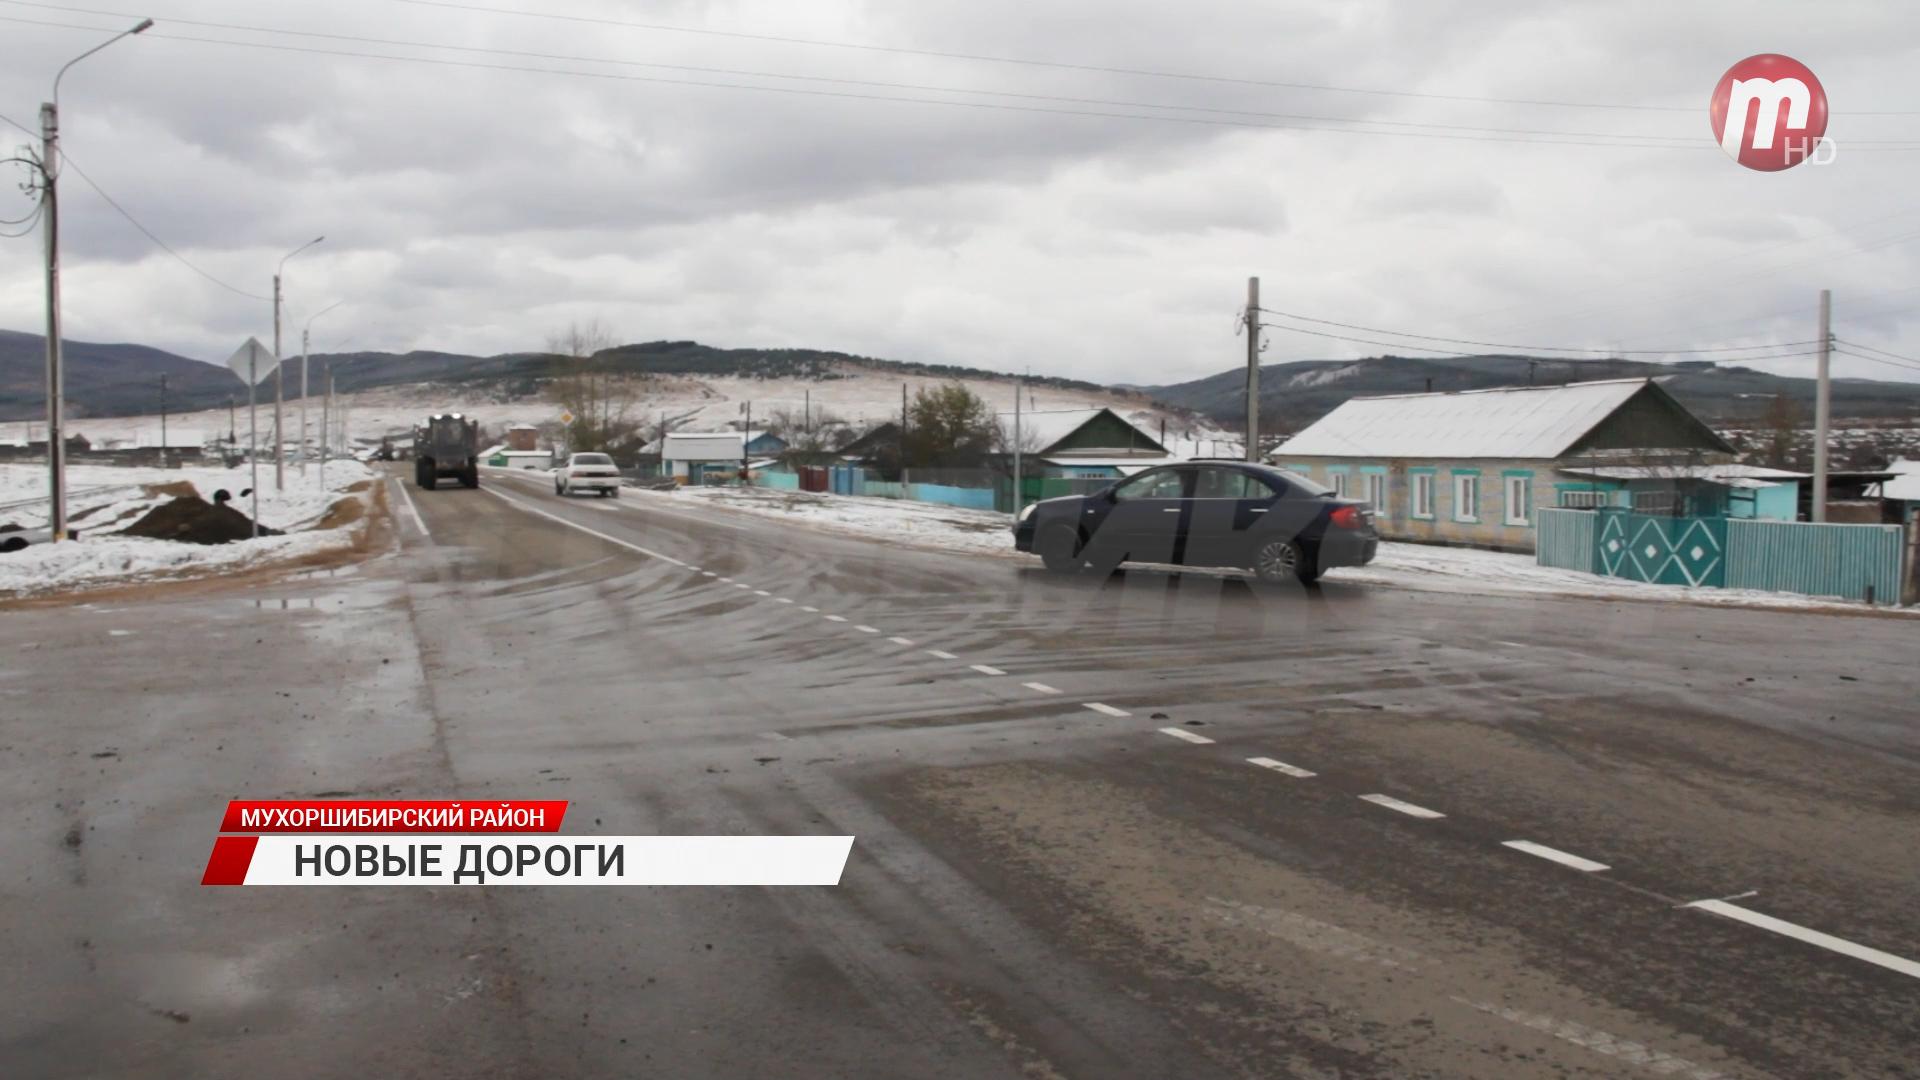 В Мухоршибирском районе досрочно закончат капитальный ремонт дороги